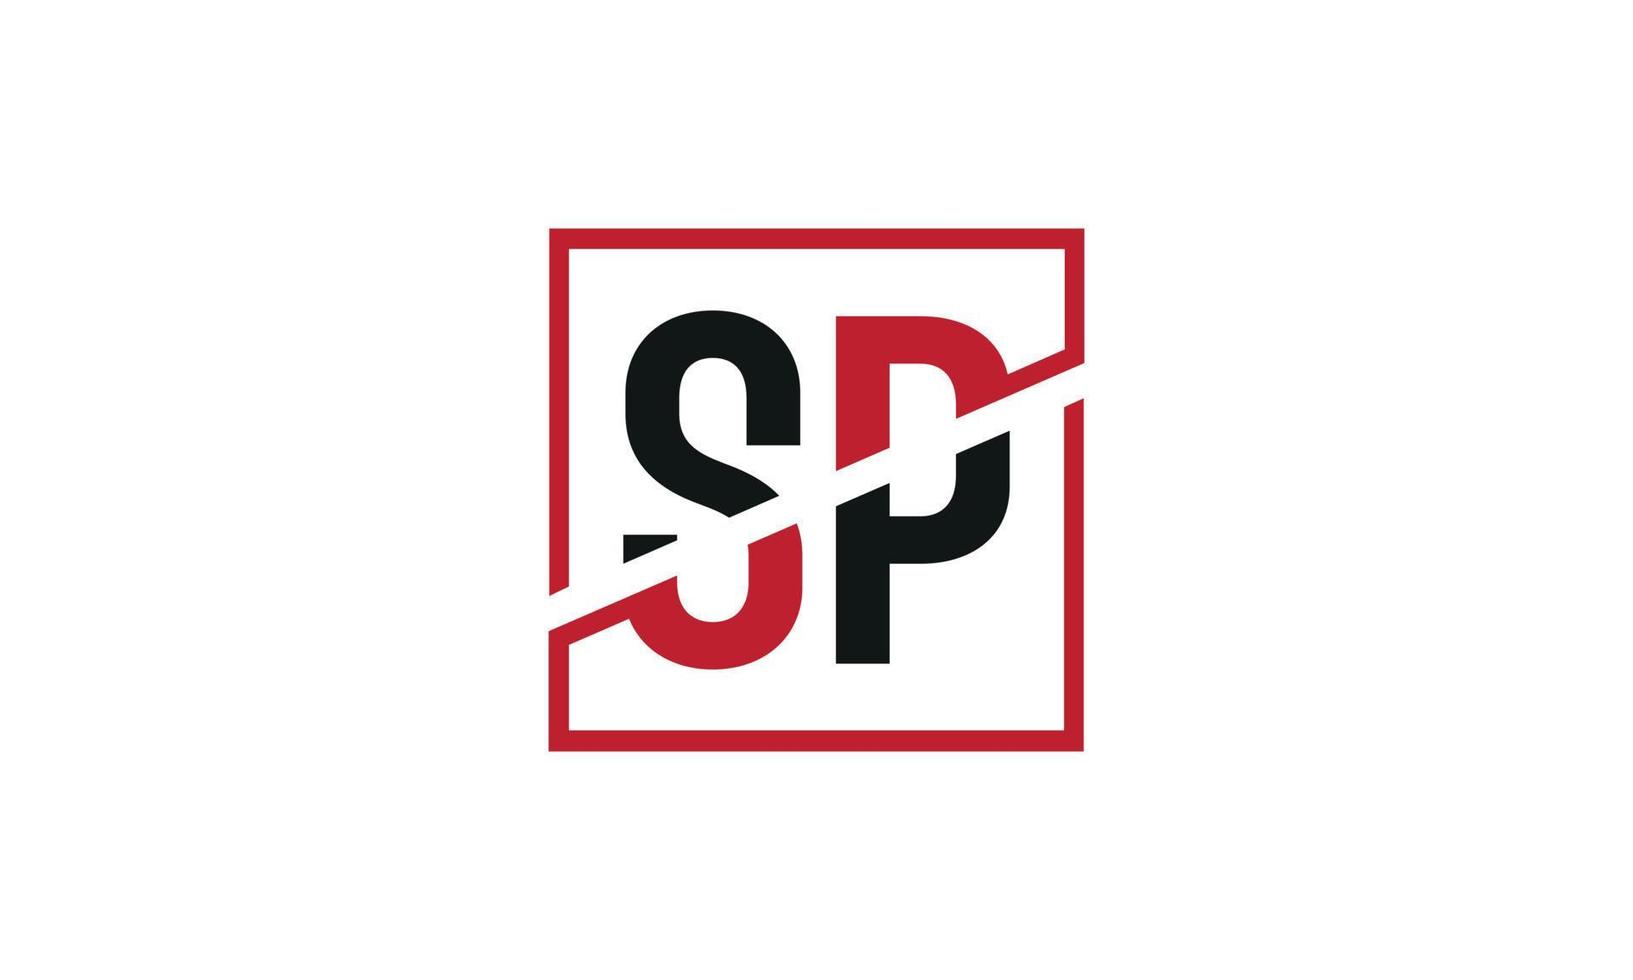 carta sp logo pro archivo vectorial vector